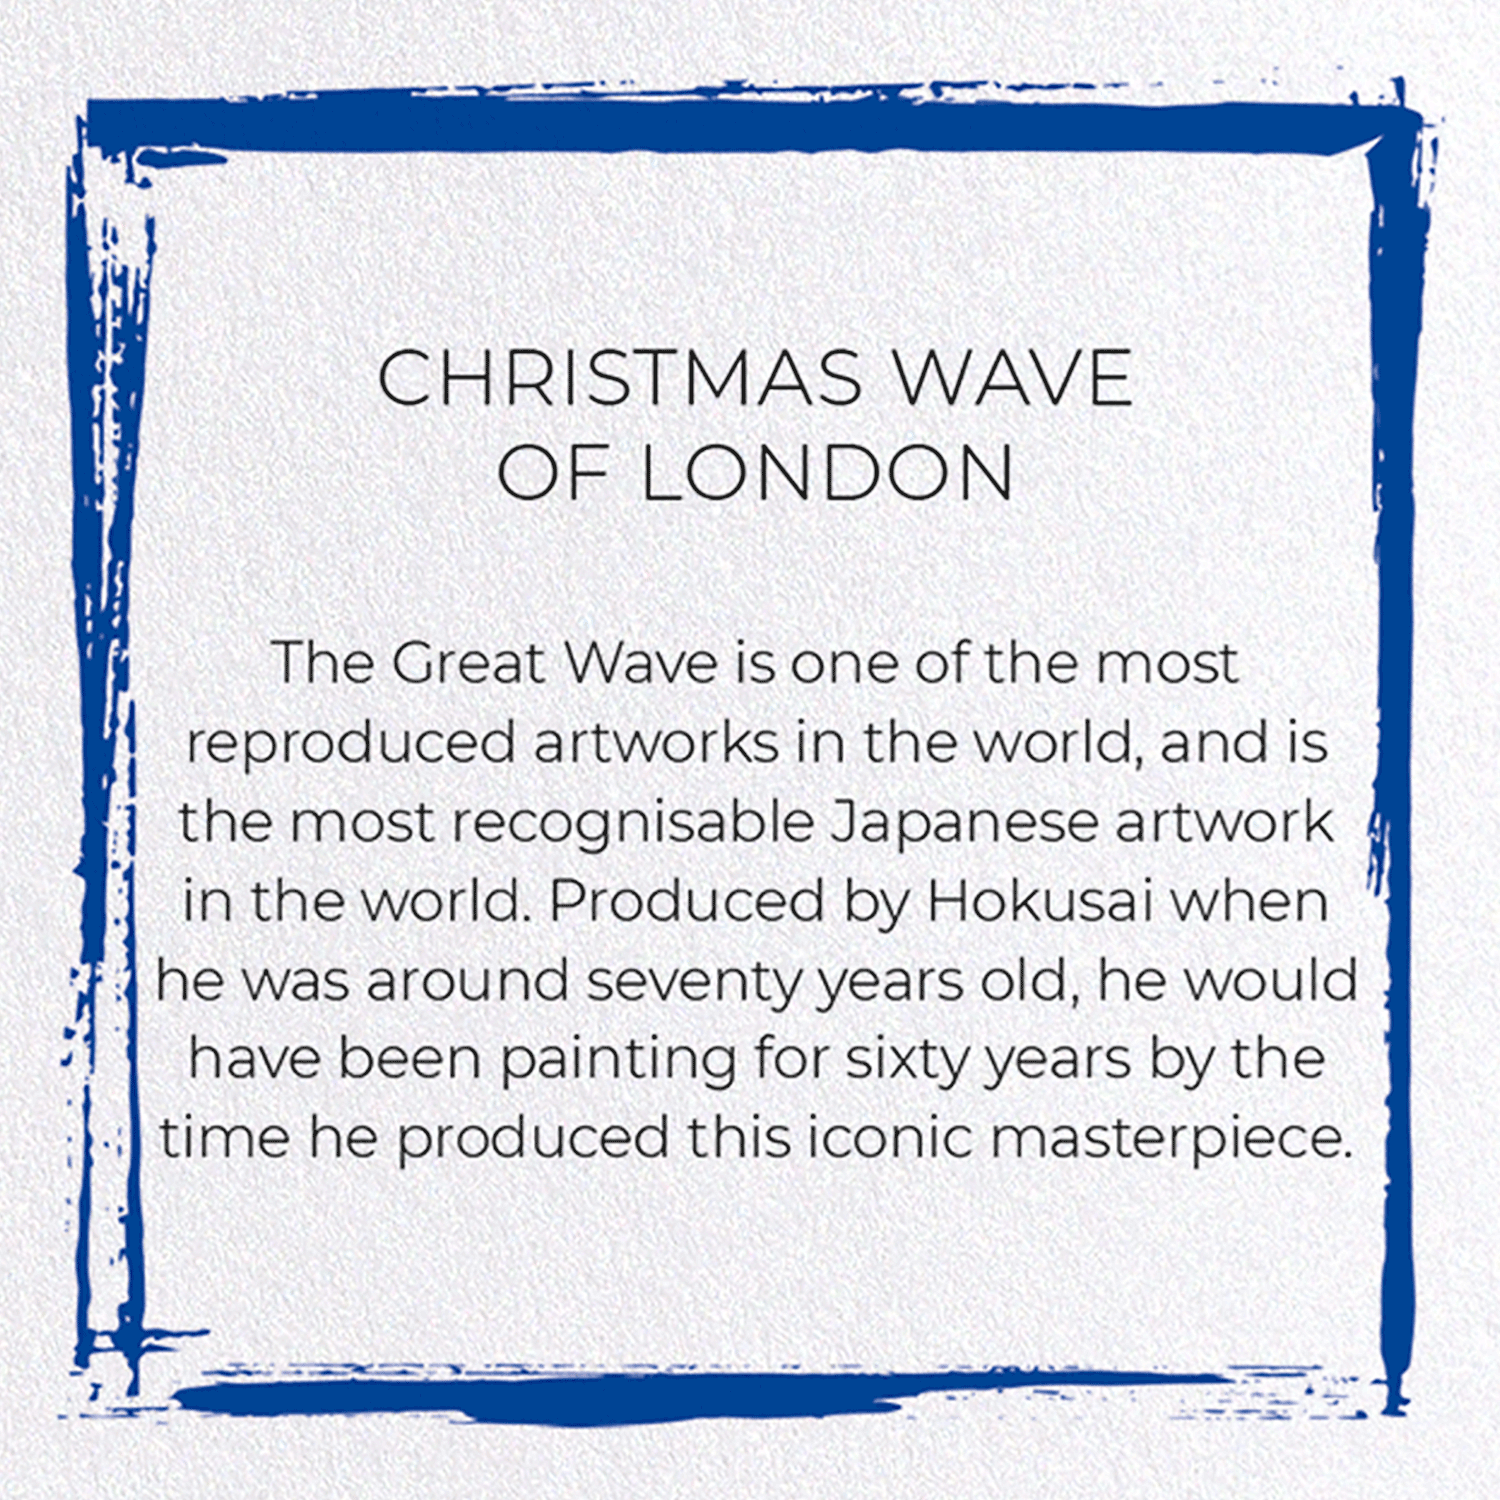 CHRISTMAS WAVE OF LONDON